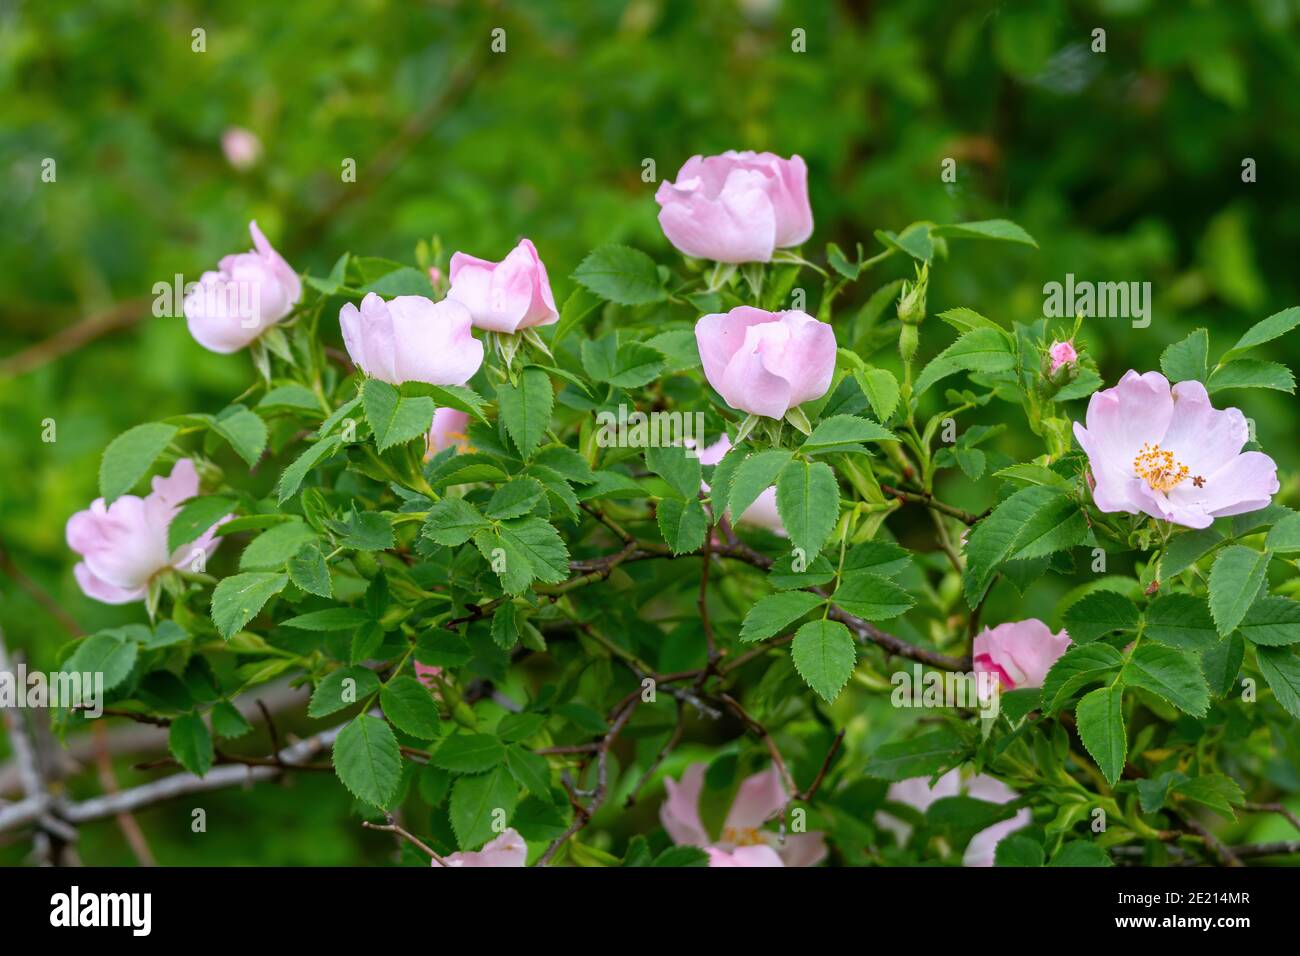 Primo piano immagine della fioritura del cespuglio di rose selvatiche (Rosa canina) Foto Stock